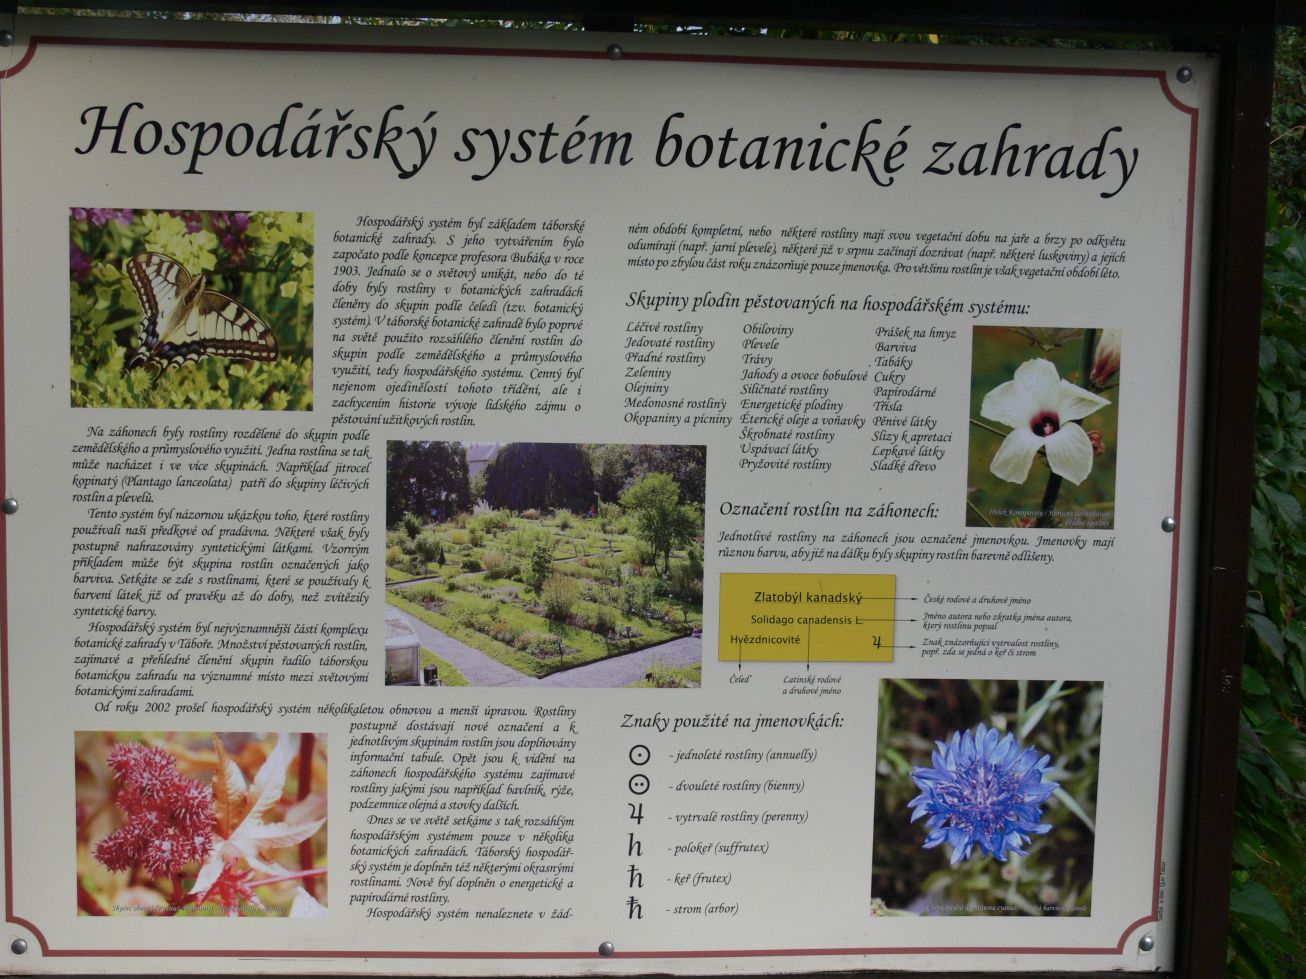 39. Popis hospodářského systému botanické zahrady
